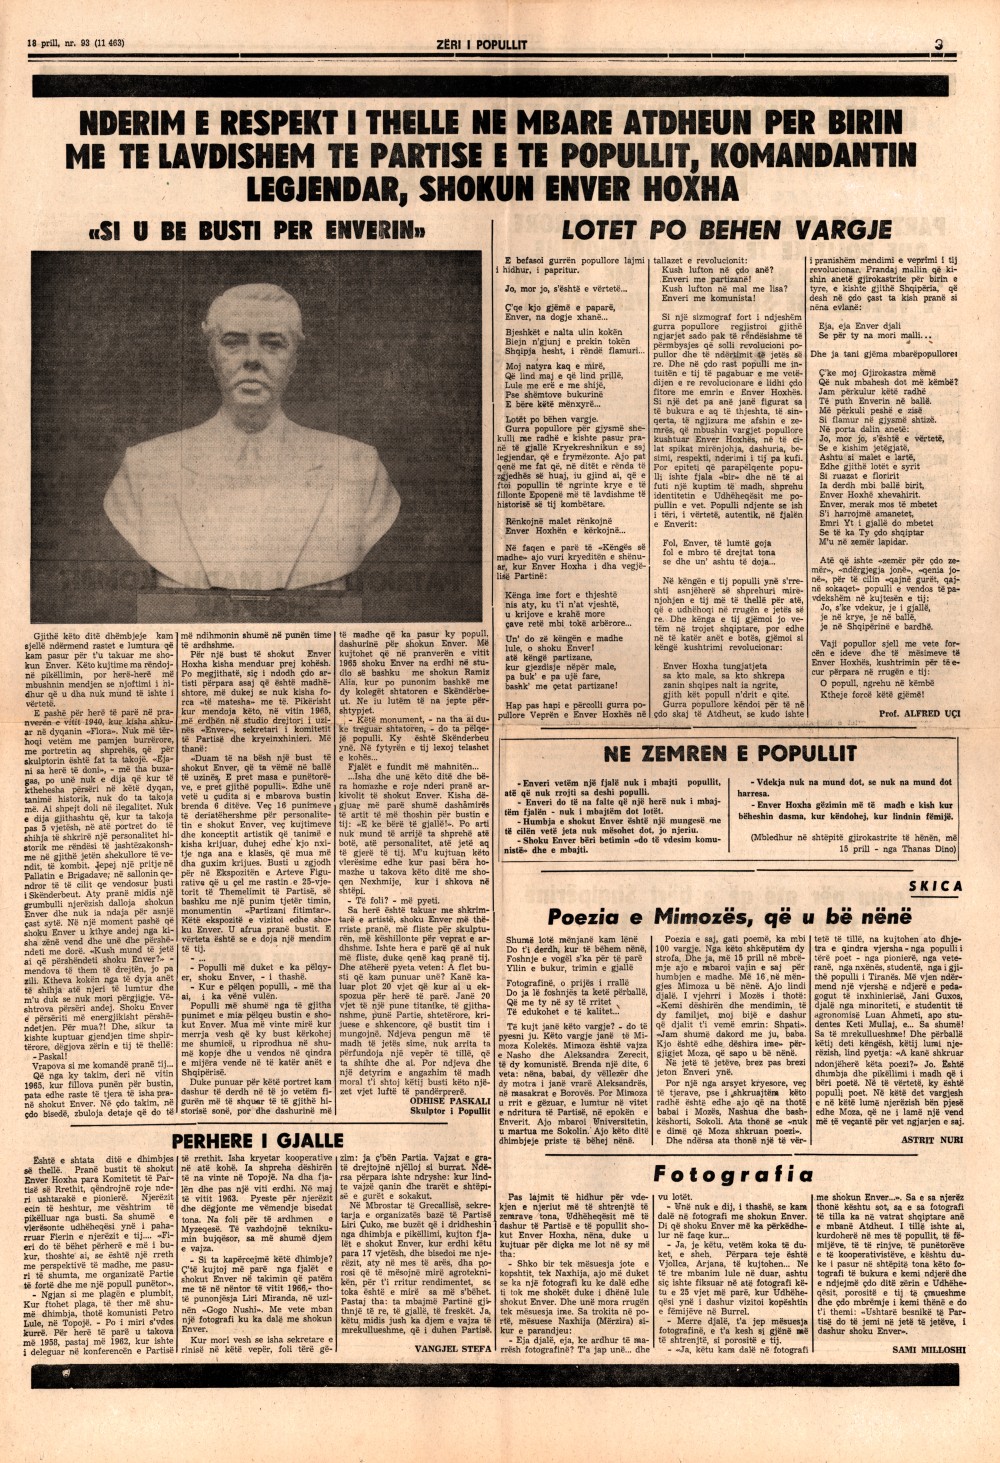 Газета "Зери и популлит" от 18 апреля 1985 года (третья полоса)